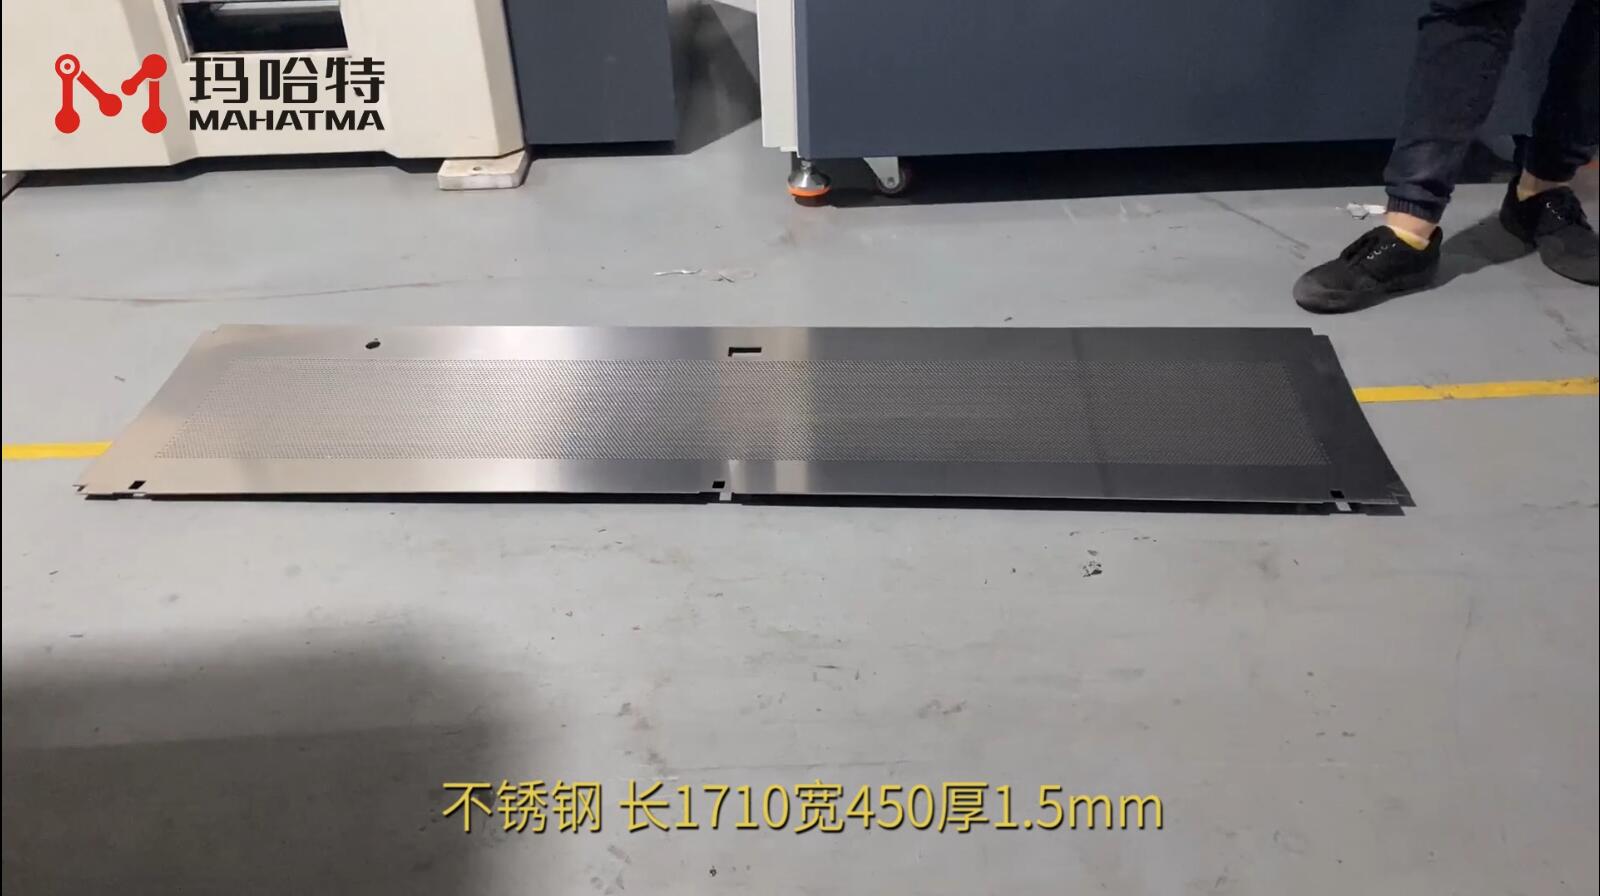 不锈钢网板 MHT80-1600 长方形 长1710宽450厚1.5mm